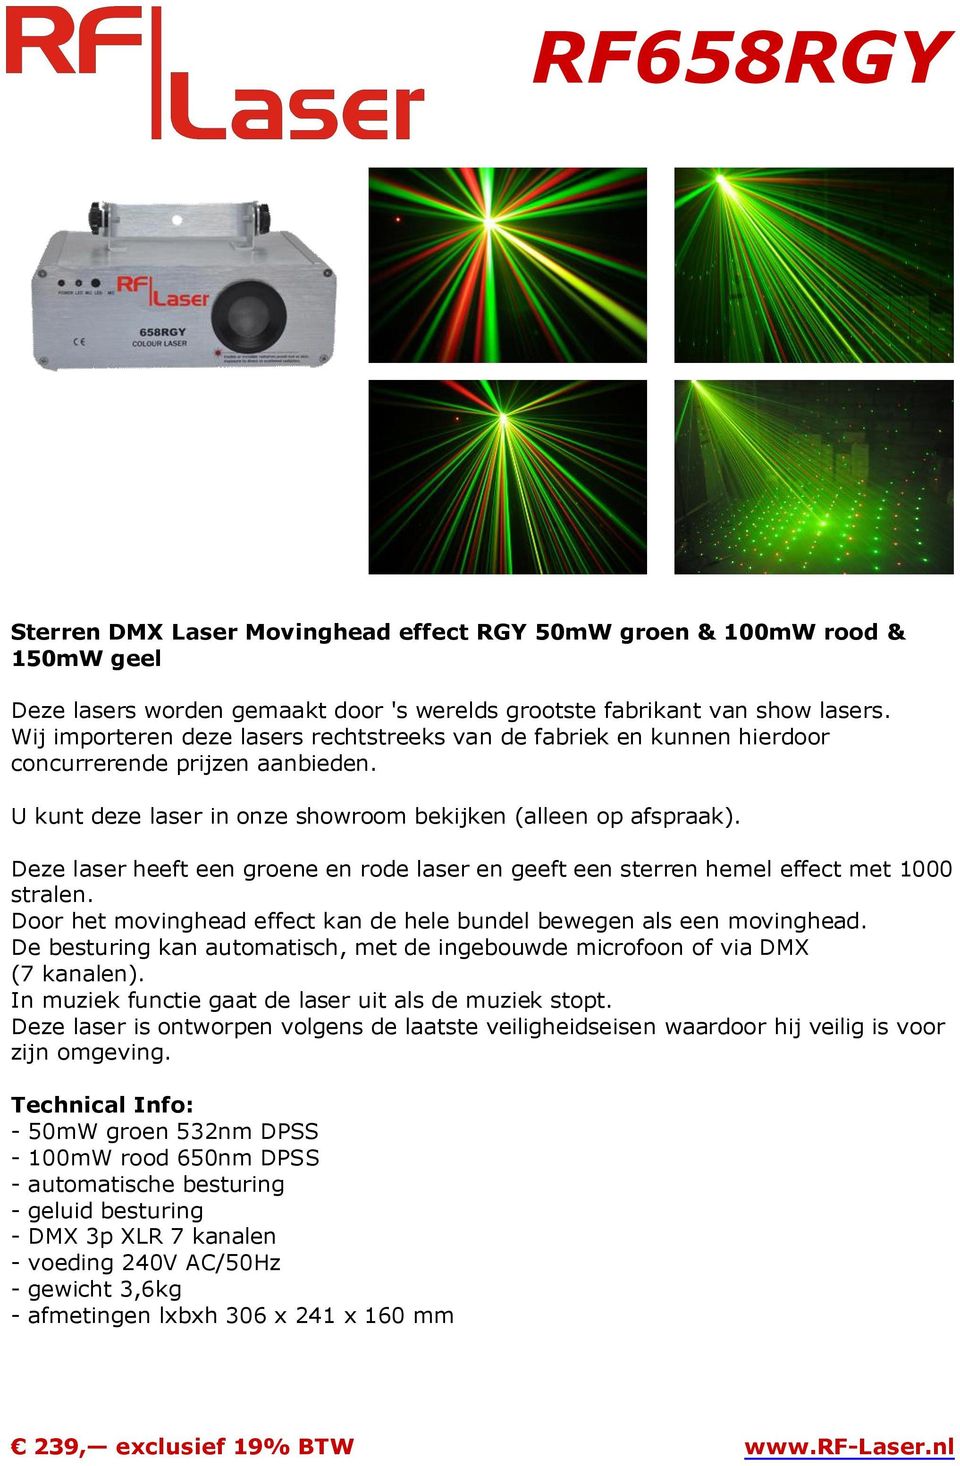 In muziek functie gaat de laser uit als de muziek stopt. Deze laser is ontworpen volgens de laatste veiligheidseisen waardoor hij veilig is voor zijn omgeving.